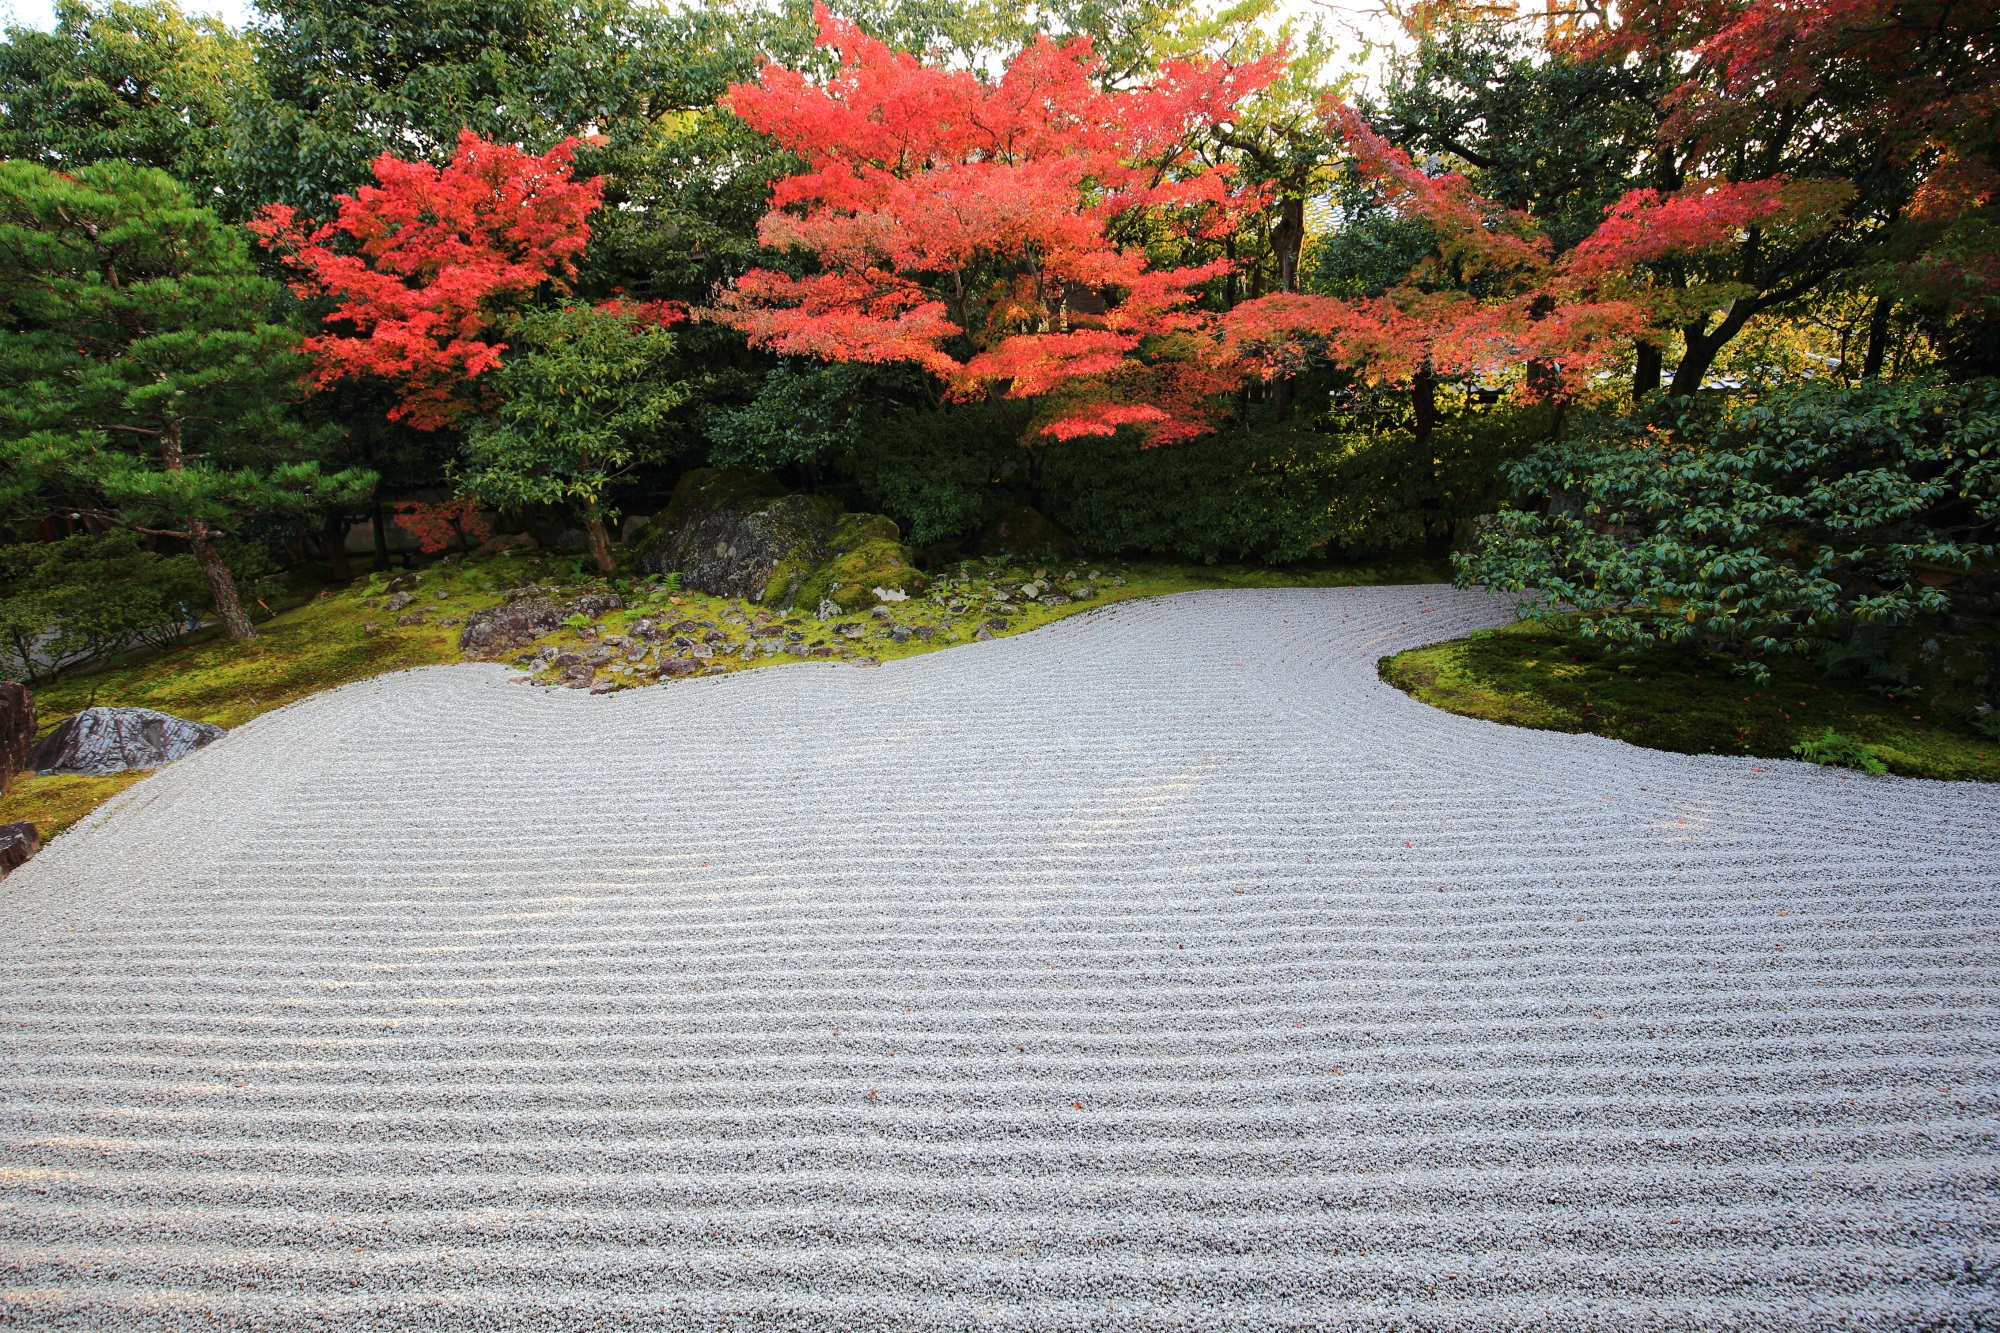 高台寺 圓徳院の南庭の白砂と美しい赤い紅葉